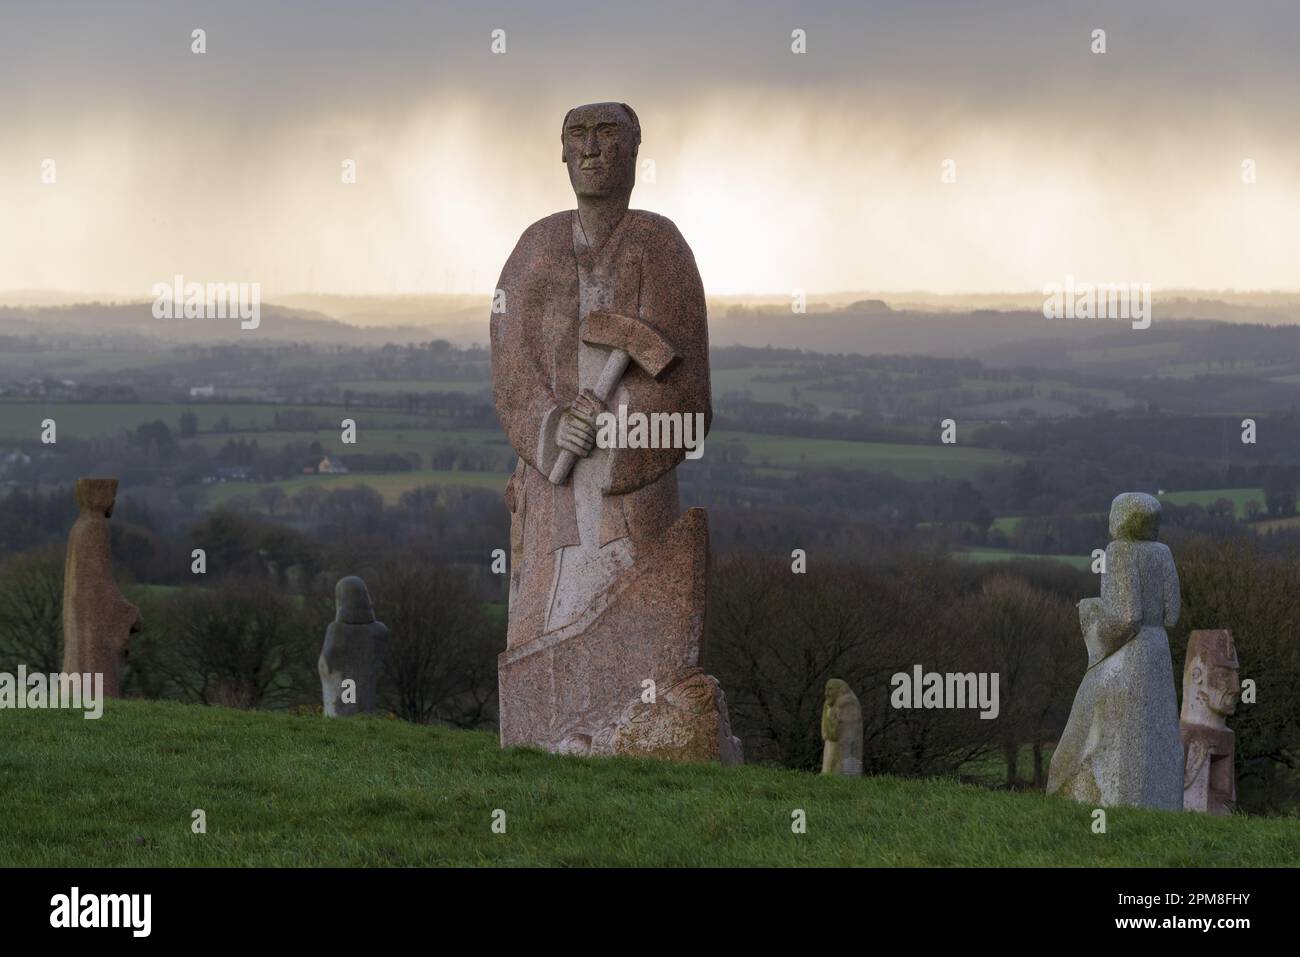 France, Côtes d'Armor, Carnoet, la Vallée des Saints ou l'Île de Pâques bretonne, est un projet associatif de 1000 sculptures monumentales sculptées en granit représentant 1000 saints bretons Banque D'Images